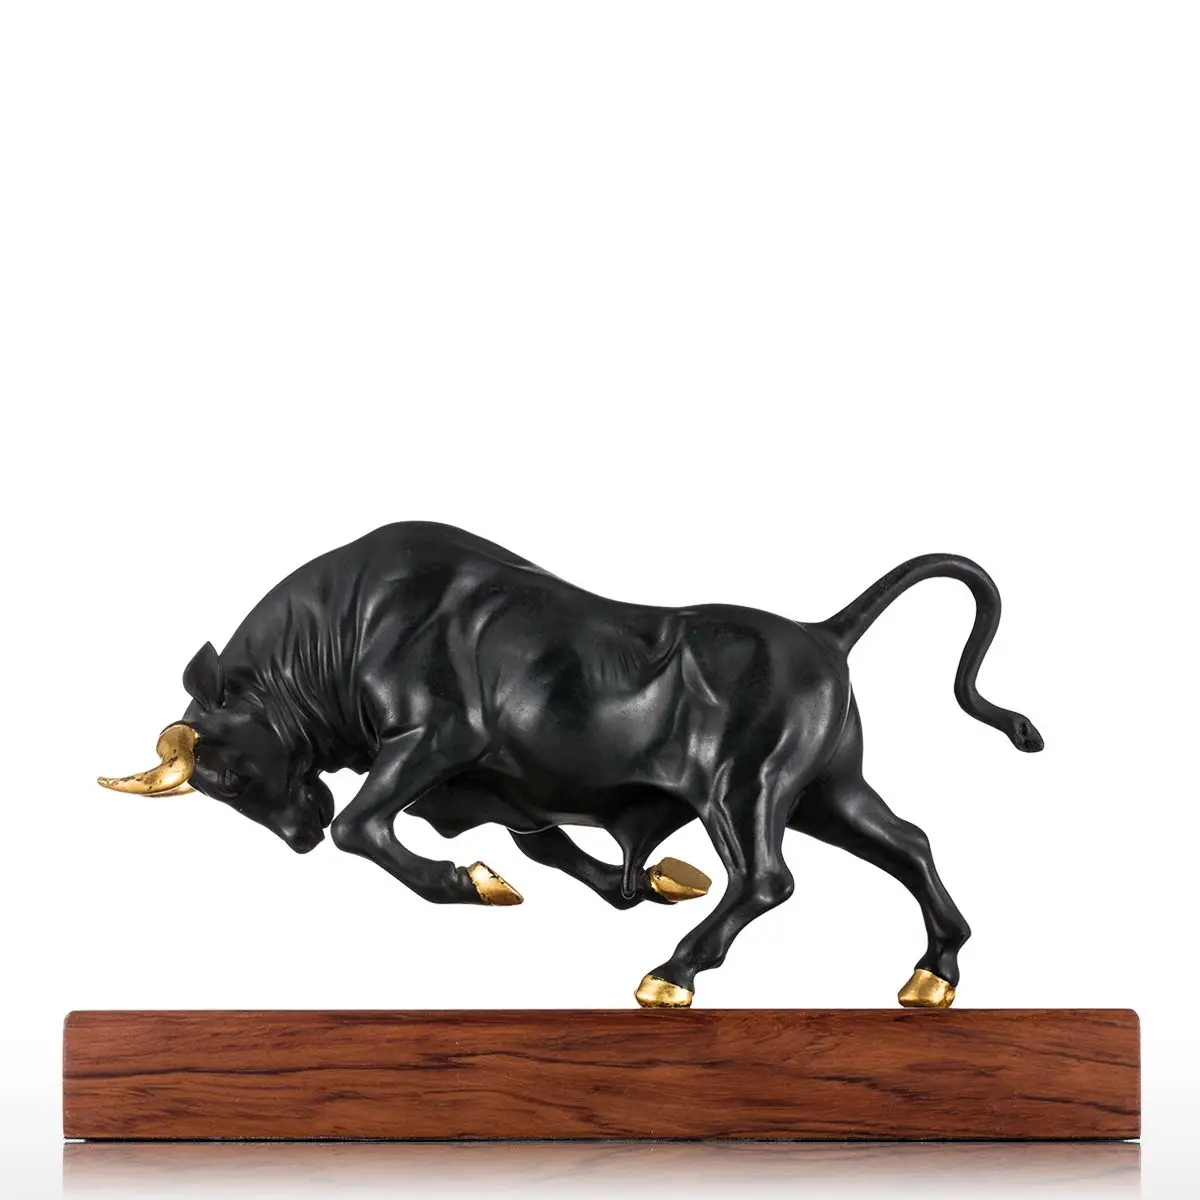 Tooarts скульптура энергичный бык бронзовая скульптура полная импульса сила скульптура животного бык настольная для домашнего украшения